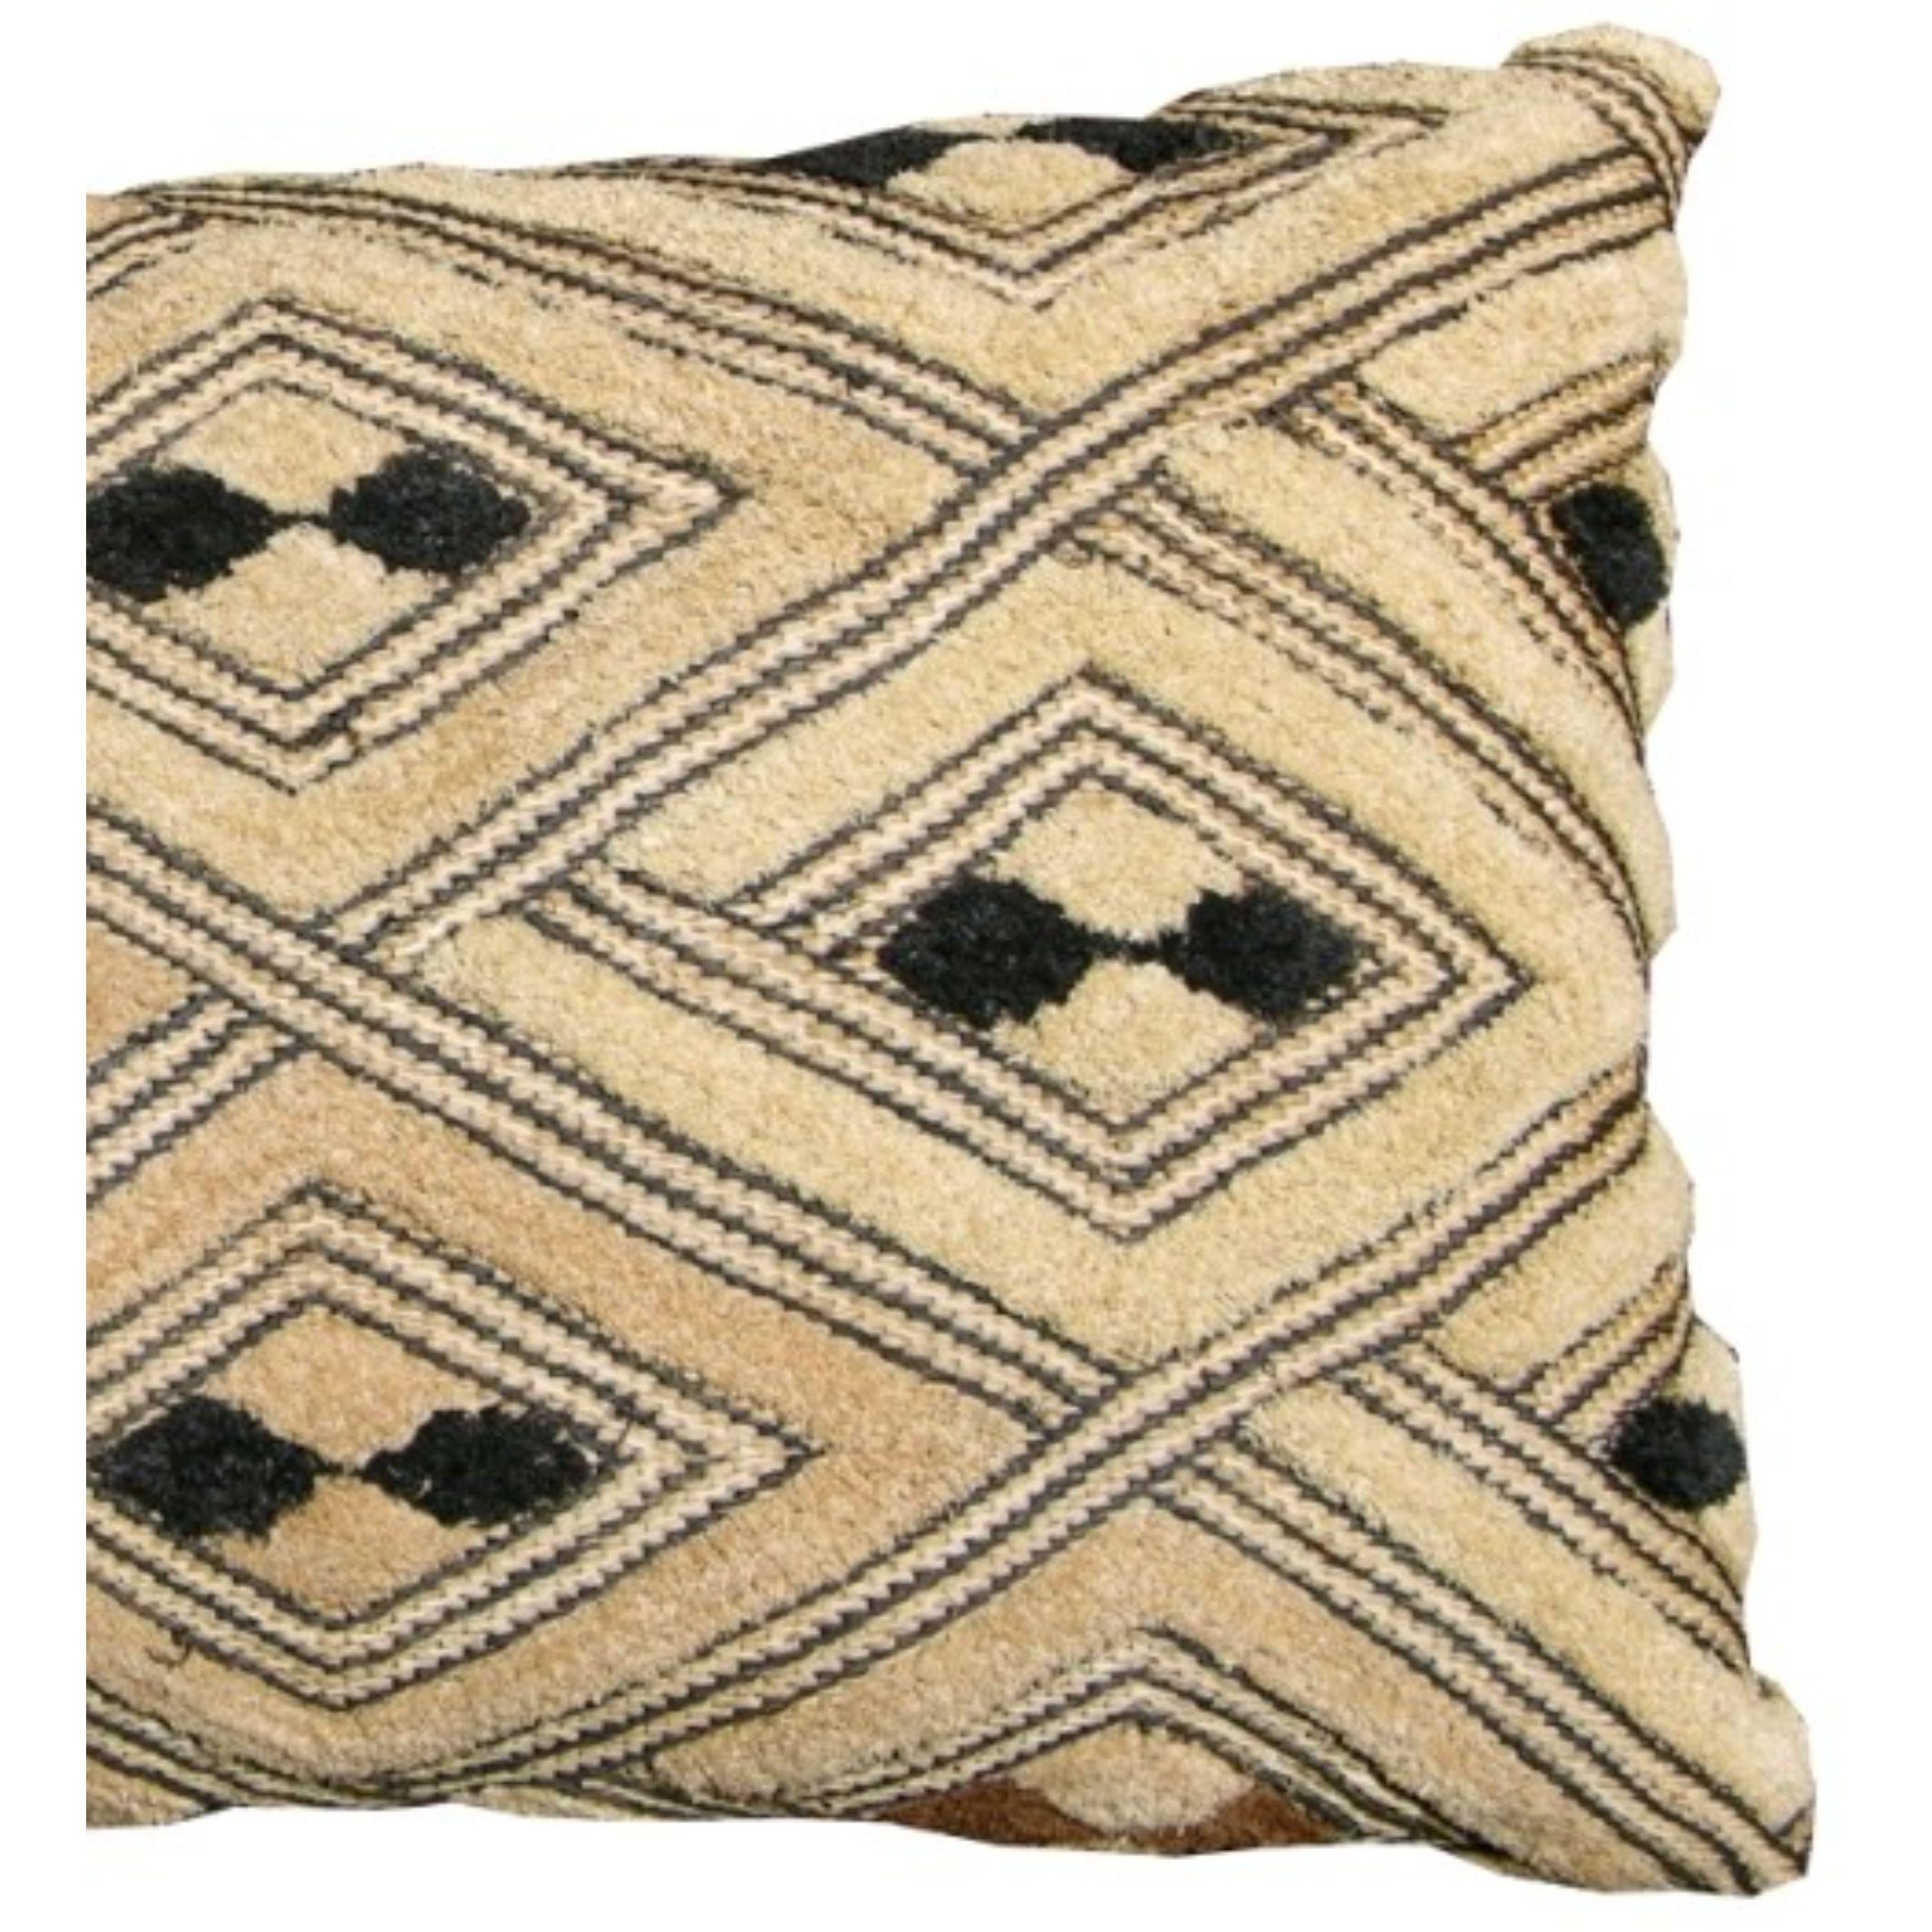 Unknown 20th Century Antique Araffia Velvet Textile Pillow For Sale